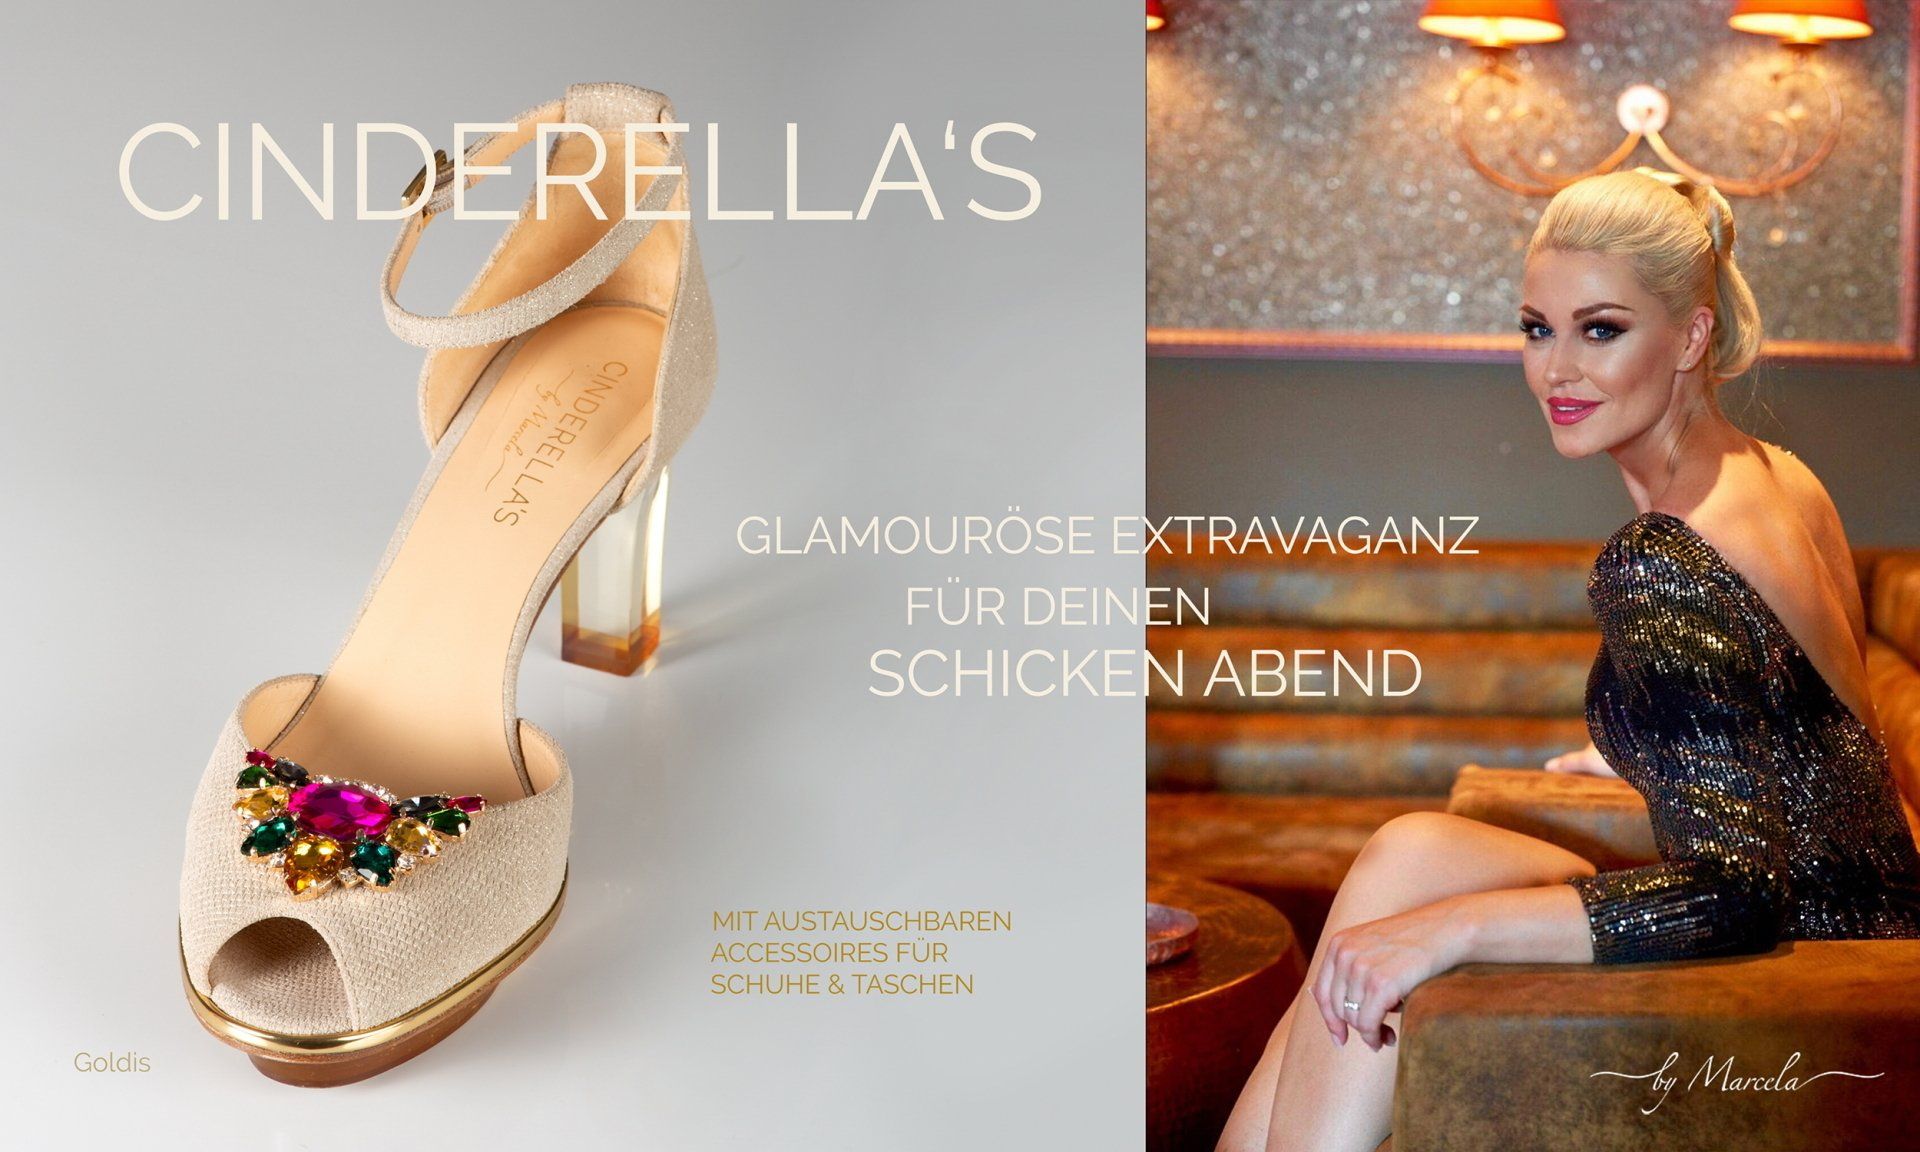 Cinderellas by Marcela, Cinderellas Schuhe, gold Cinderellas Schuhe mit transparentem high heel